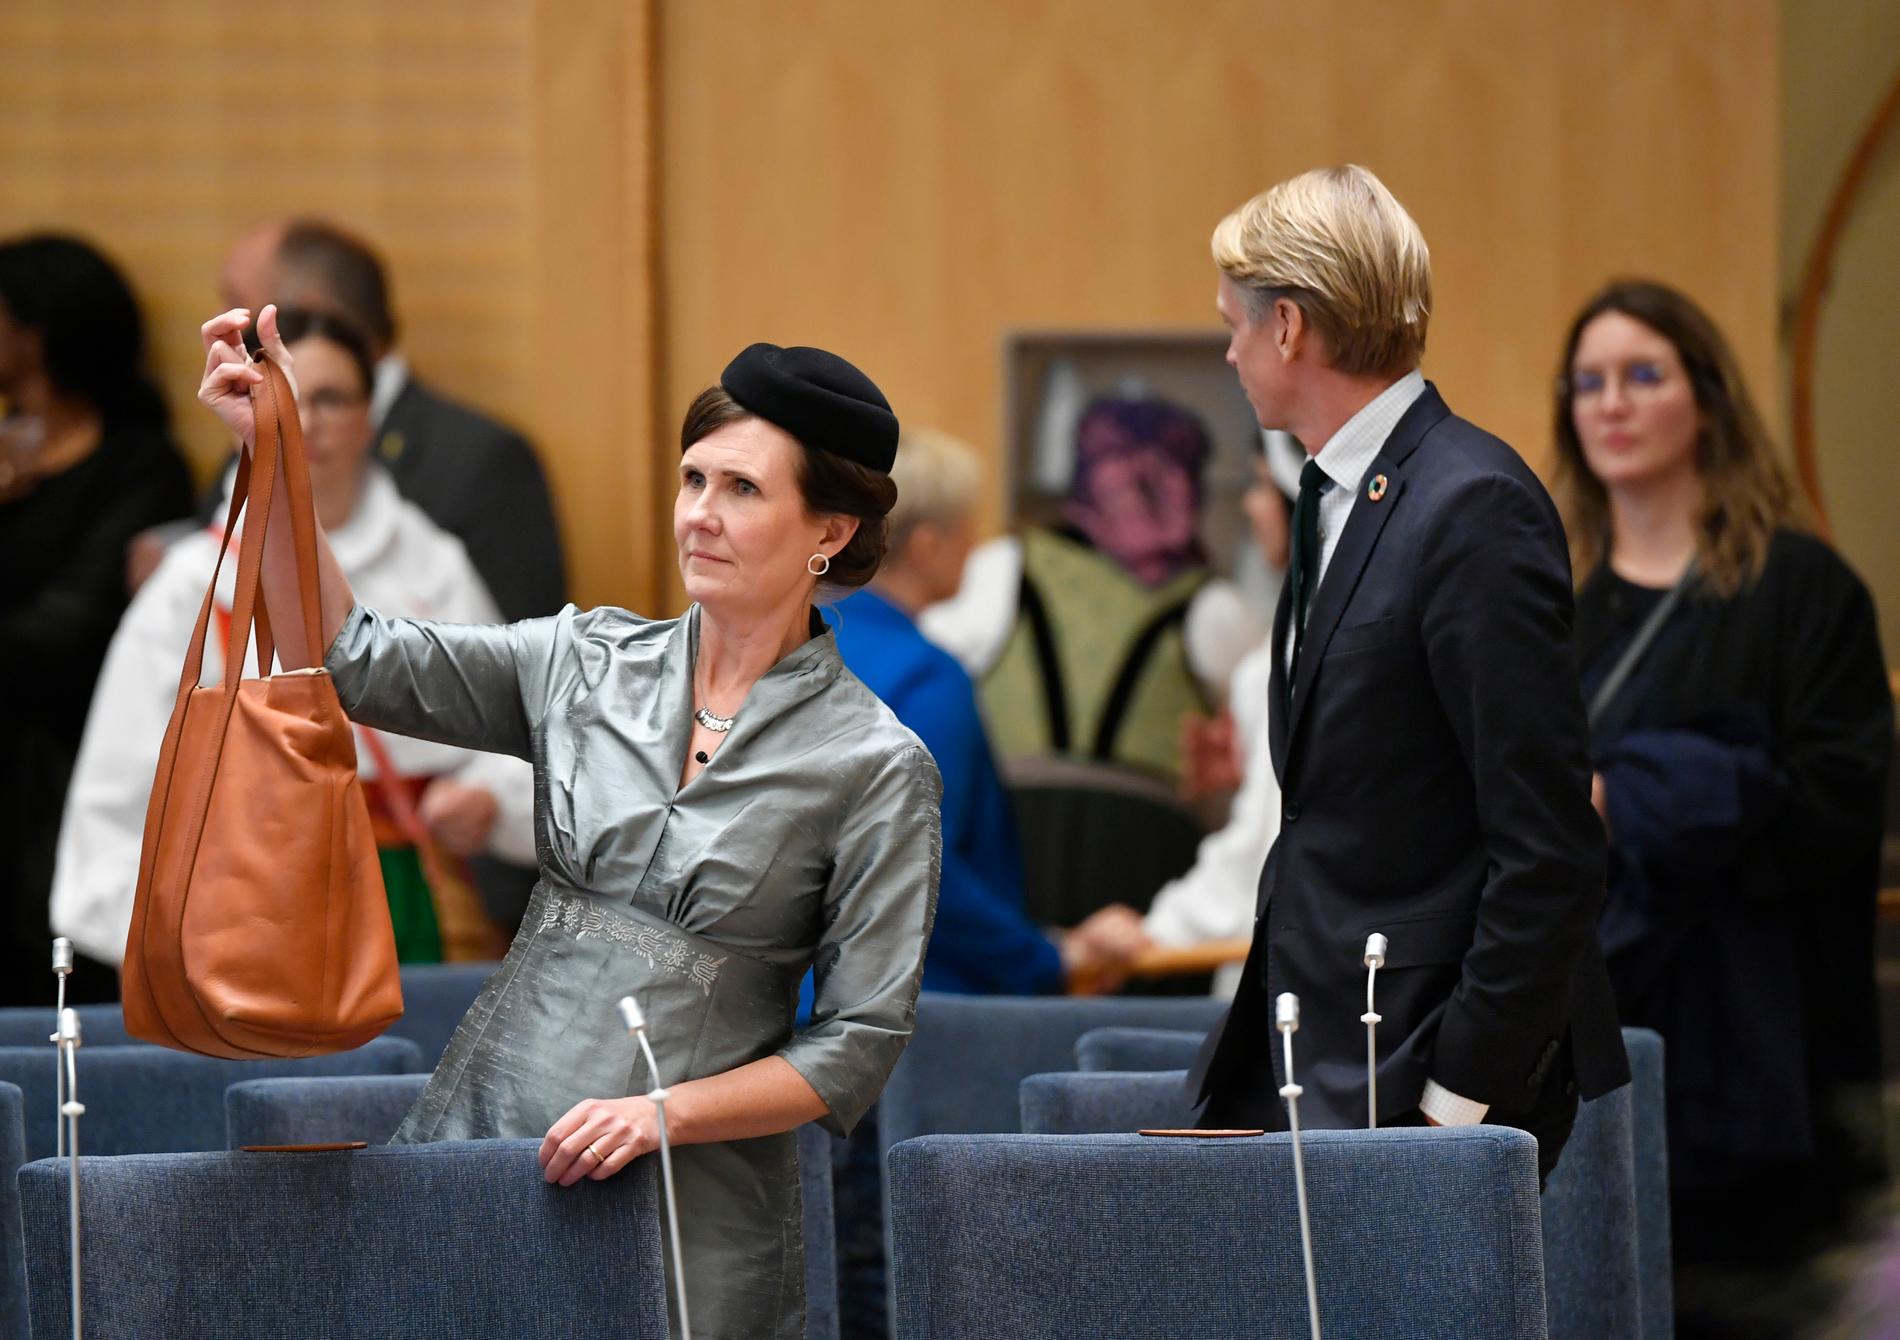 Miljöpartiets båda språkrör Märta Stenevi och Per Bolund i plenisalen i riksdagshuset i samband med riksmötets öppnande.